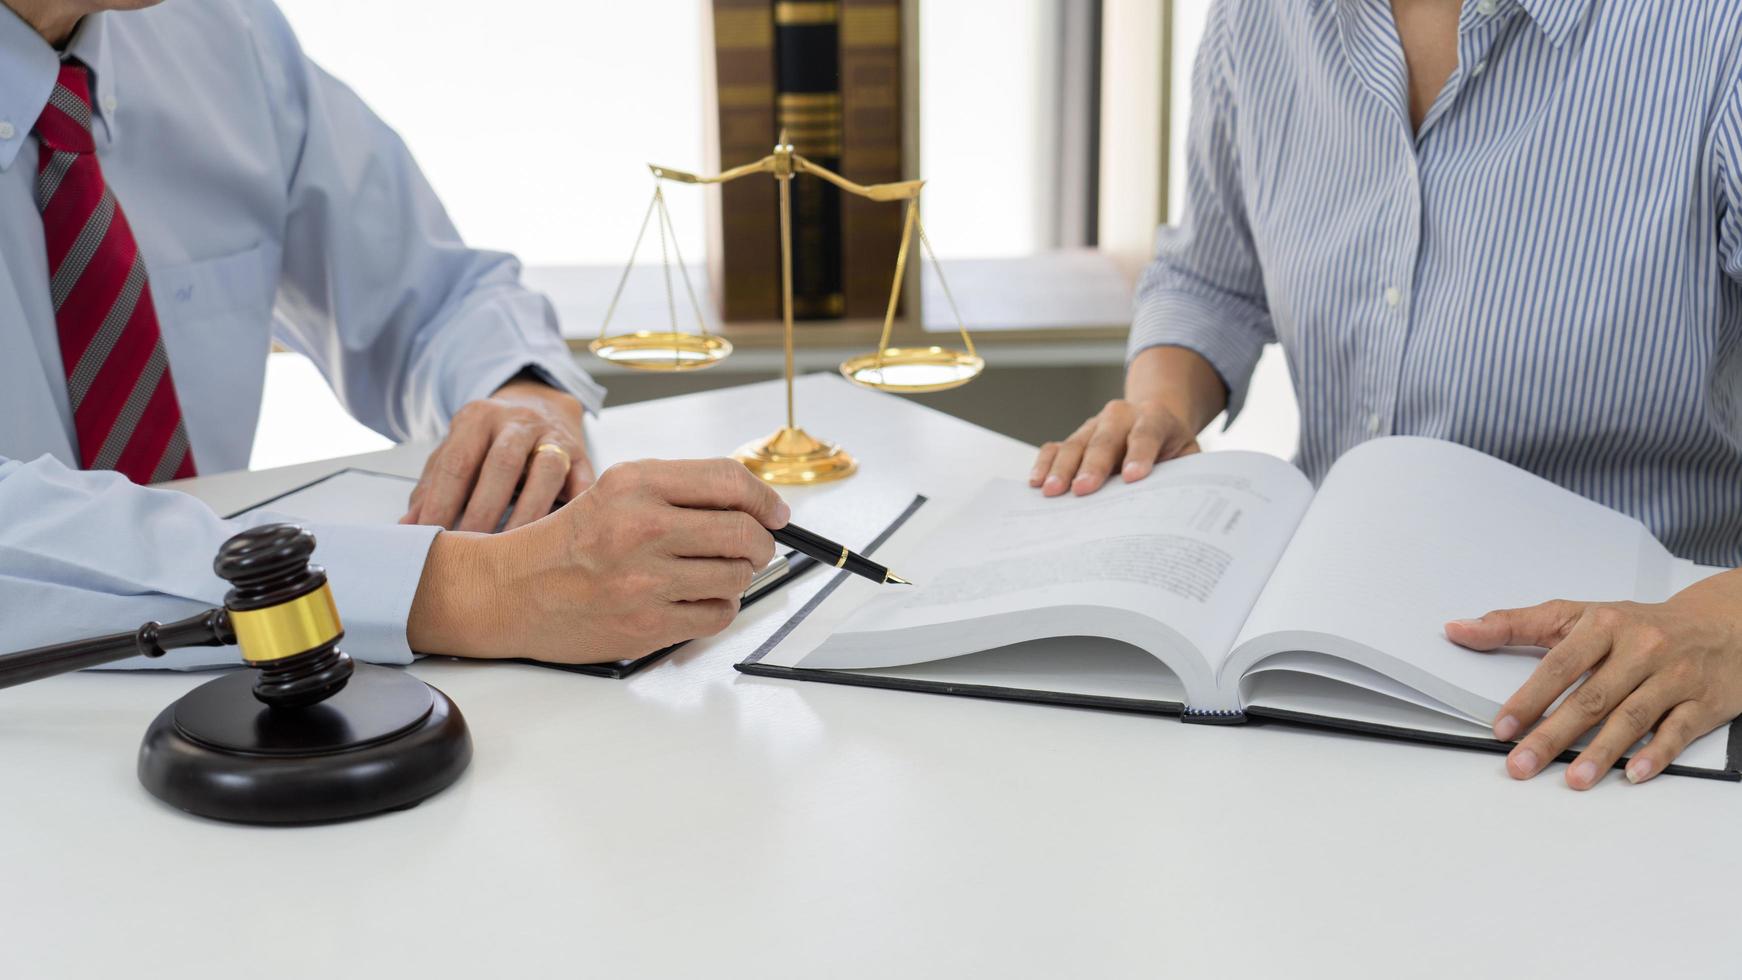 Klient mit seinen Partneranwälten oder Rechtsanwälten, die Besprechung eines Dokuments oder einer Vertragsvereinbarung besprechen, am Tisch im Büro arbeiten, gute Servicezusammenarbeit. foto